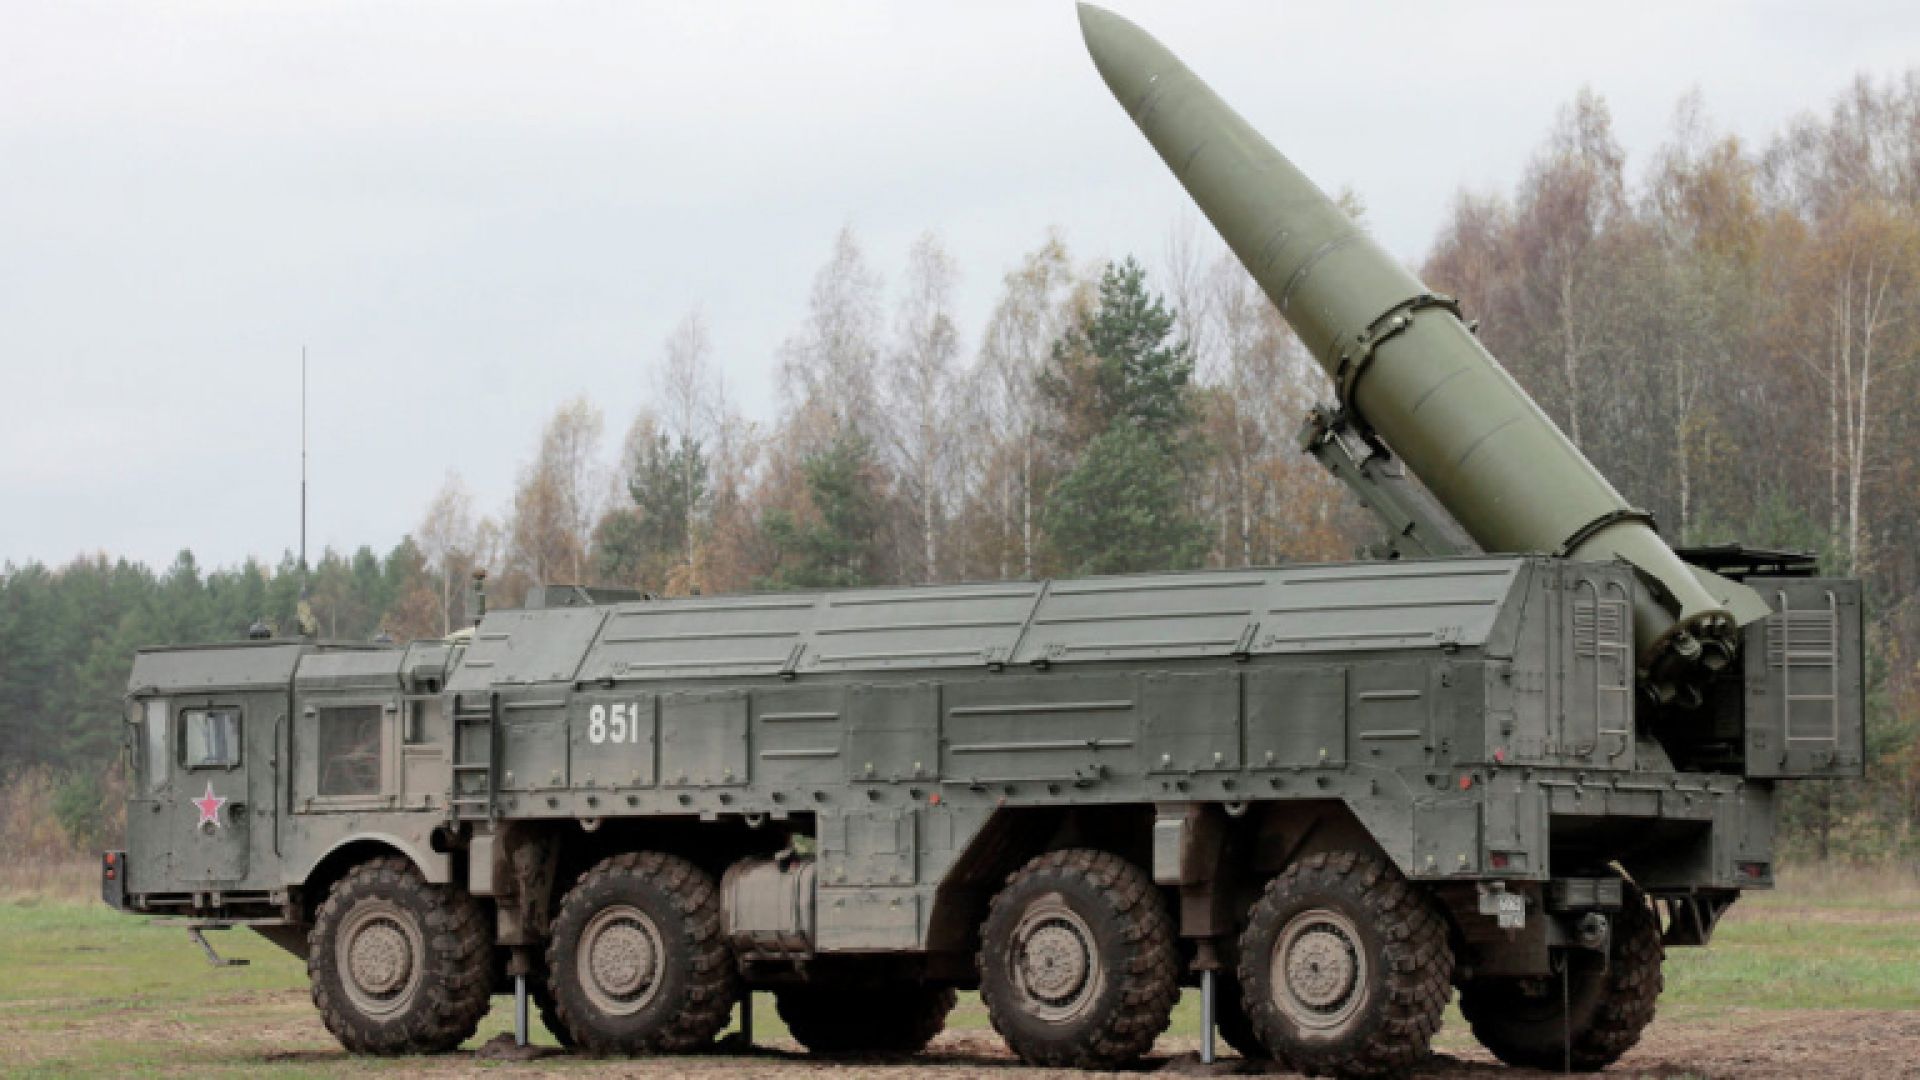  Искандер - съветската квазибалистична ракета с дребен обхват 